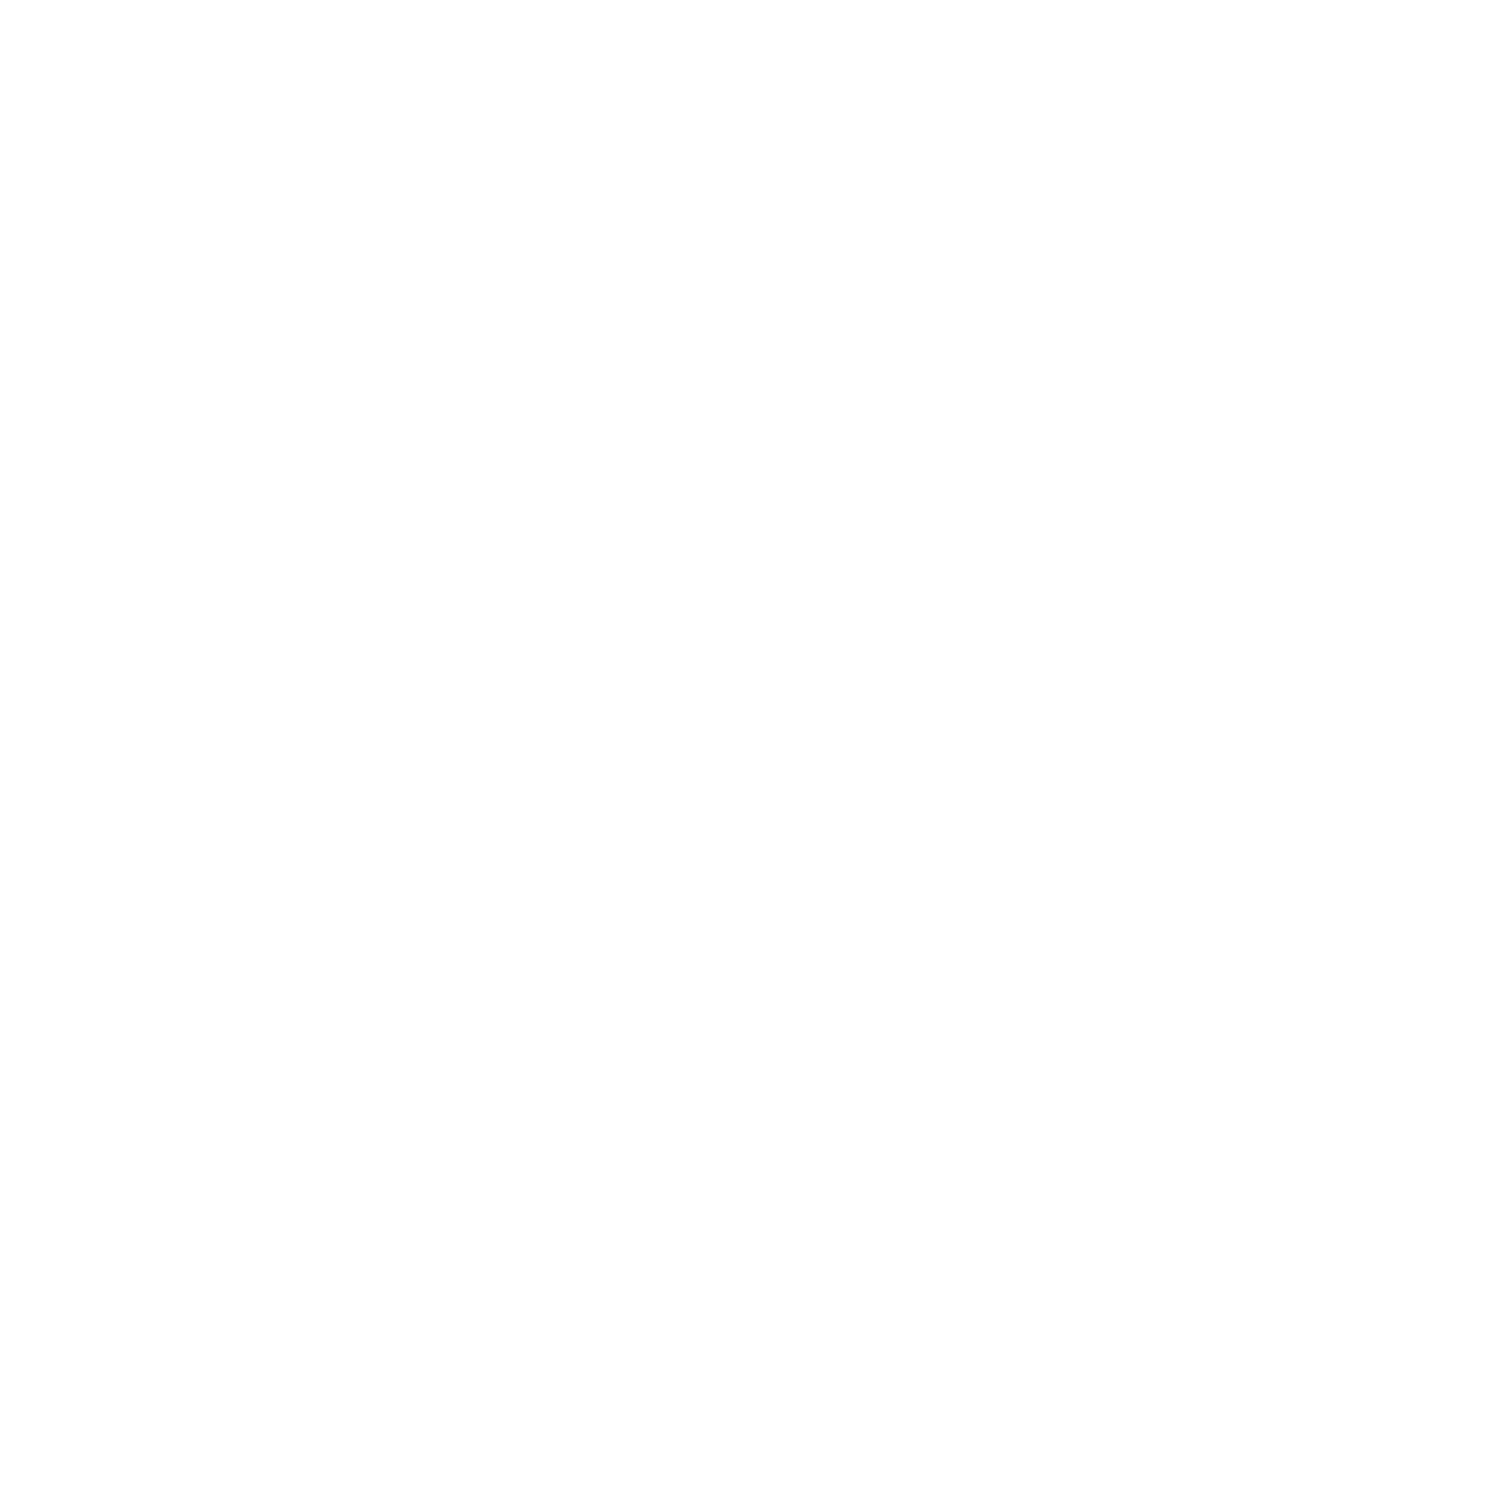 Kellams Massage, PLLC